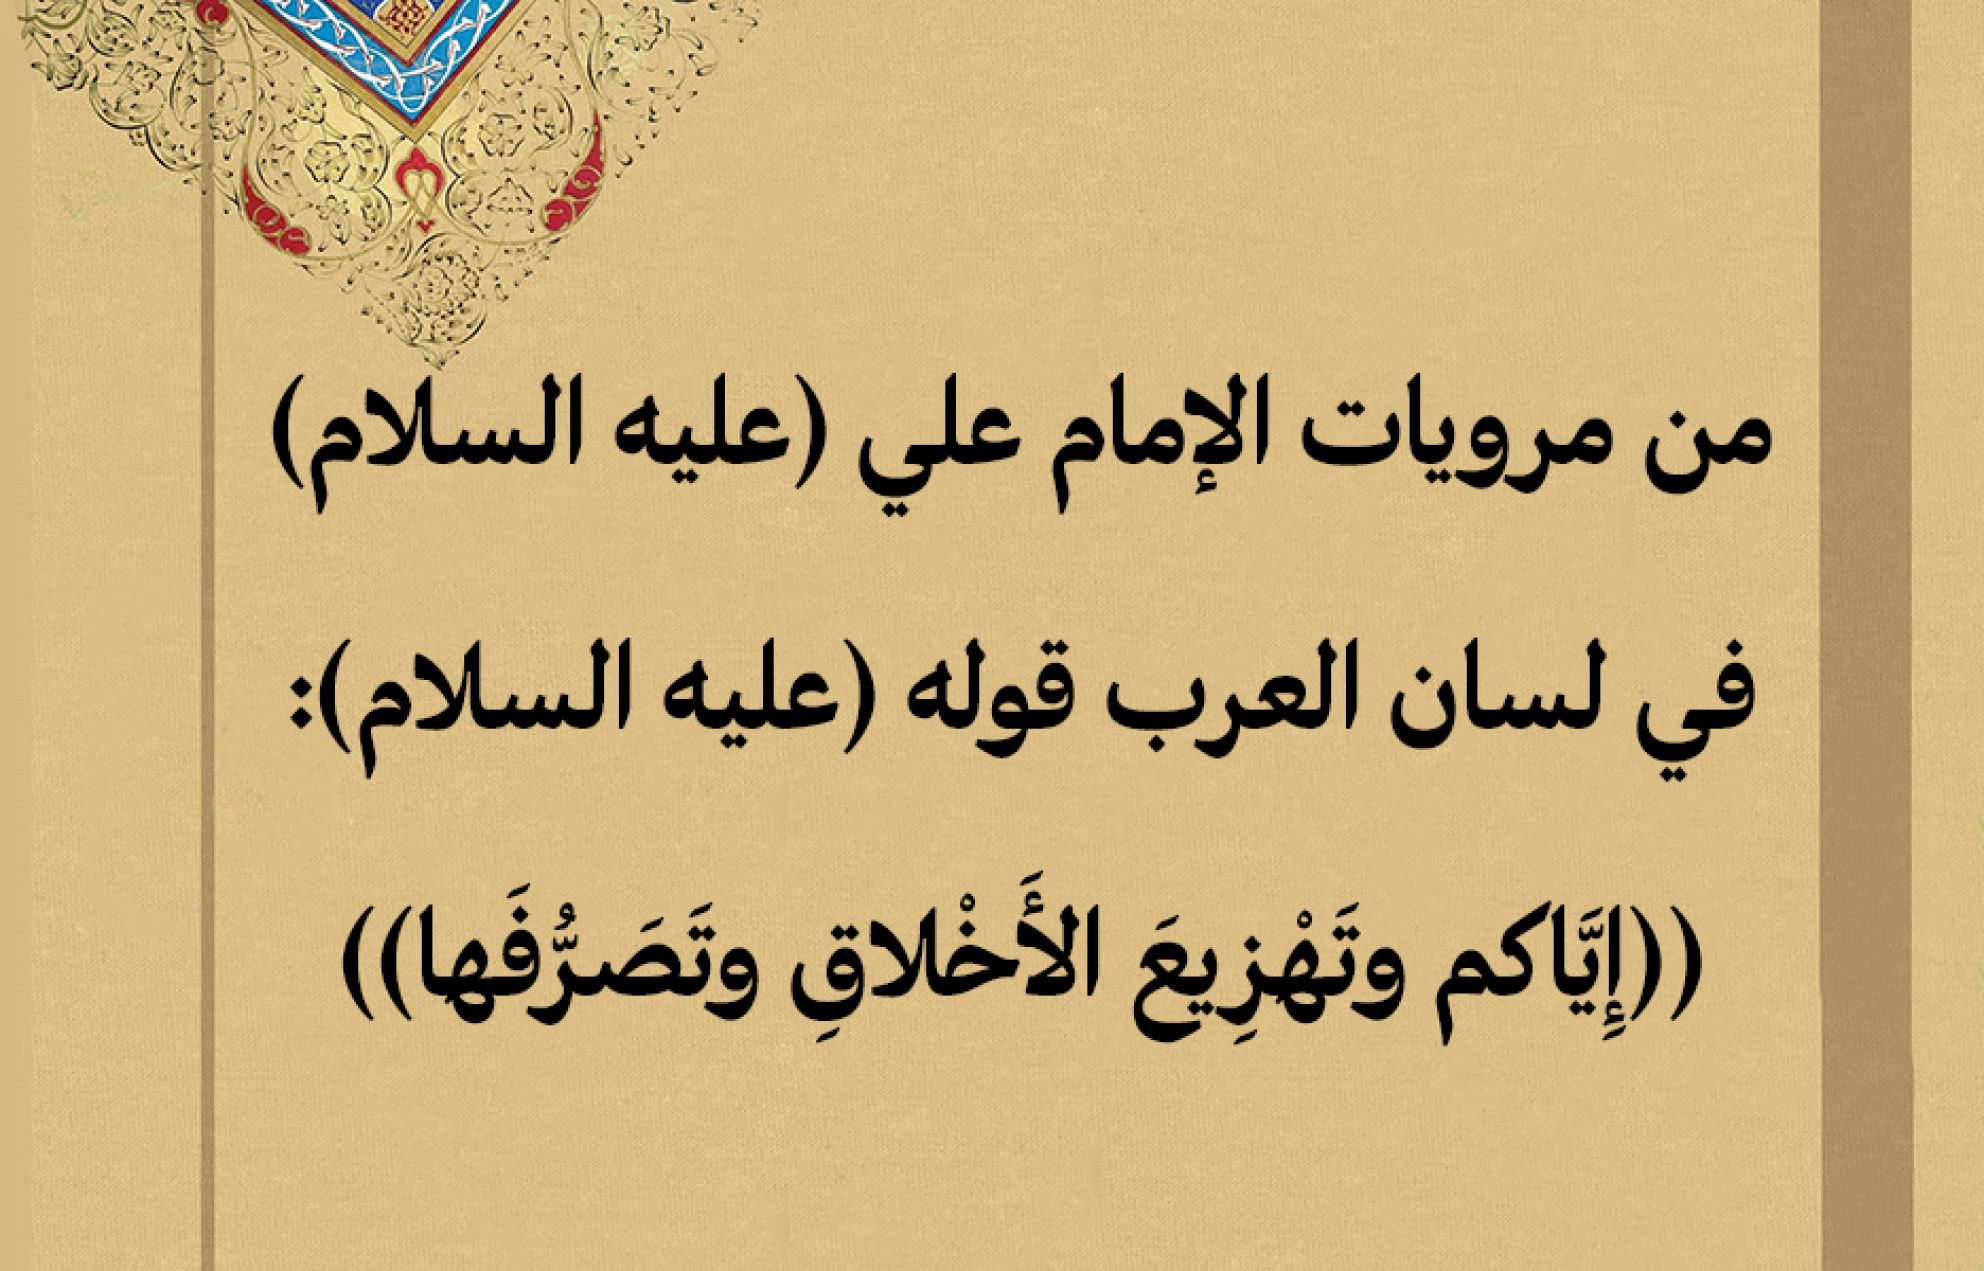 من مرويات الإمام علي (عليه السلام) في لسان العرب قوله (عليه السلام): ((إِيَّاكم وتَهْزِيعَ الأَخْلاقِ وتَصَرُّفَها))